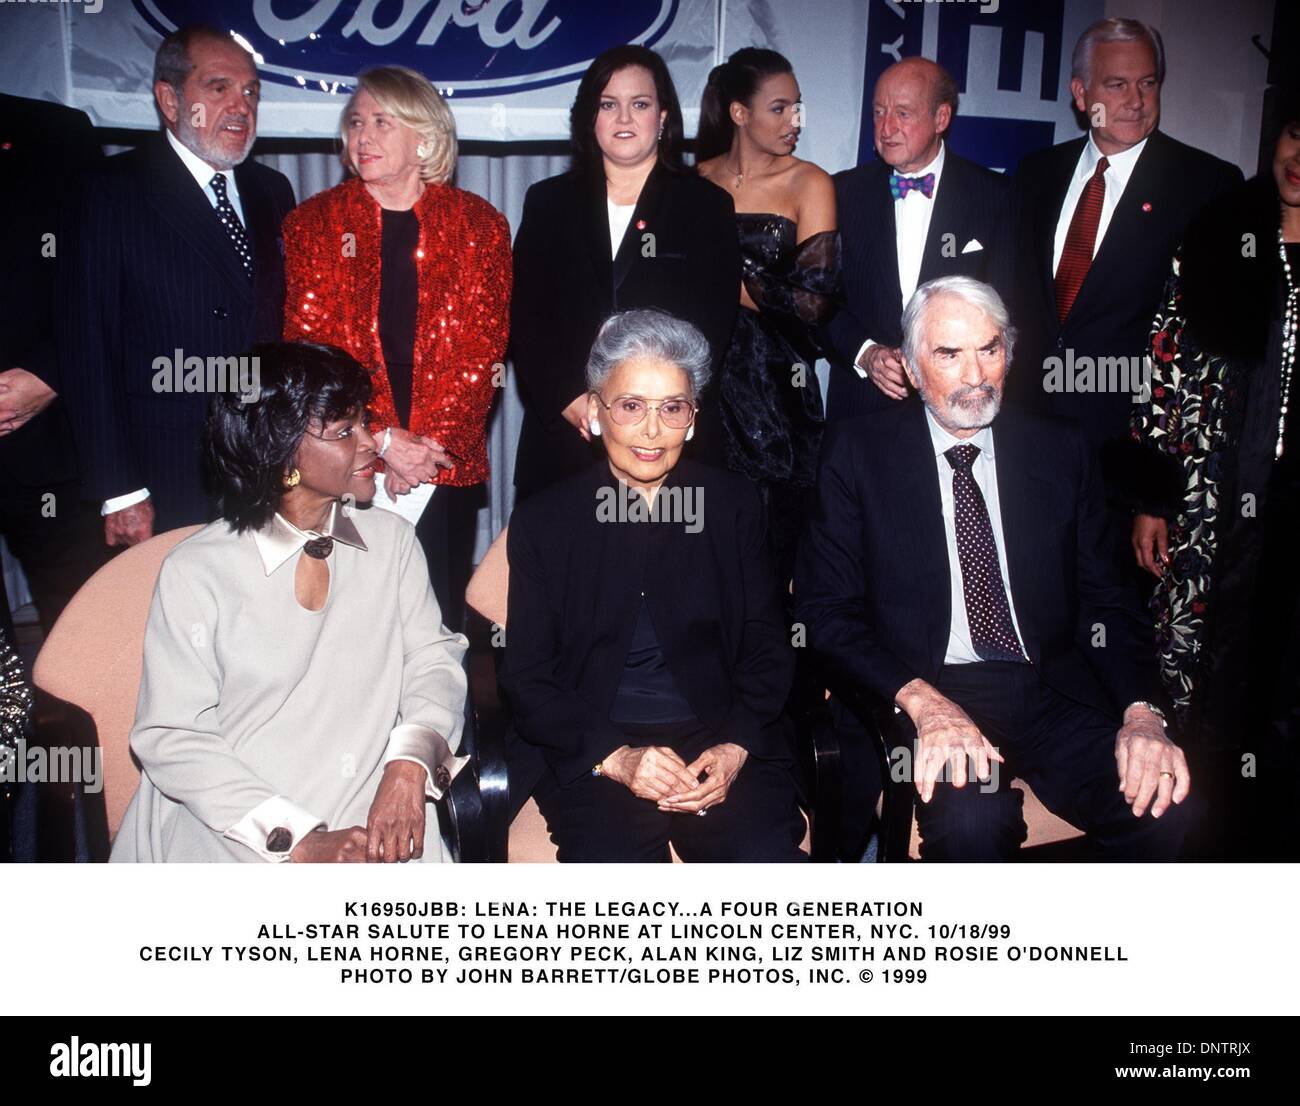 18 oct., 1999 - K16950JBB : LENA L'héritage d'une génération TOUS LES QUATRE ÉTOILES SALUT À LENA HORNE.AT Lincoln Center, New York 10/18/1999.CECILY TYSON,Lena Horne, Gregory Peck, ALAN KING,LIZ SMITH ET Rosie O'Donnell. JOHN BARRETT/(1999 Image : © Crédit Photos Globe/ZUMAPRESS.com) Banque D'Images